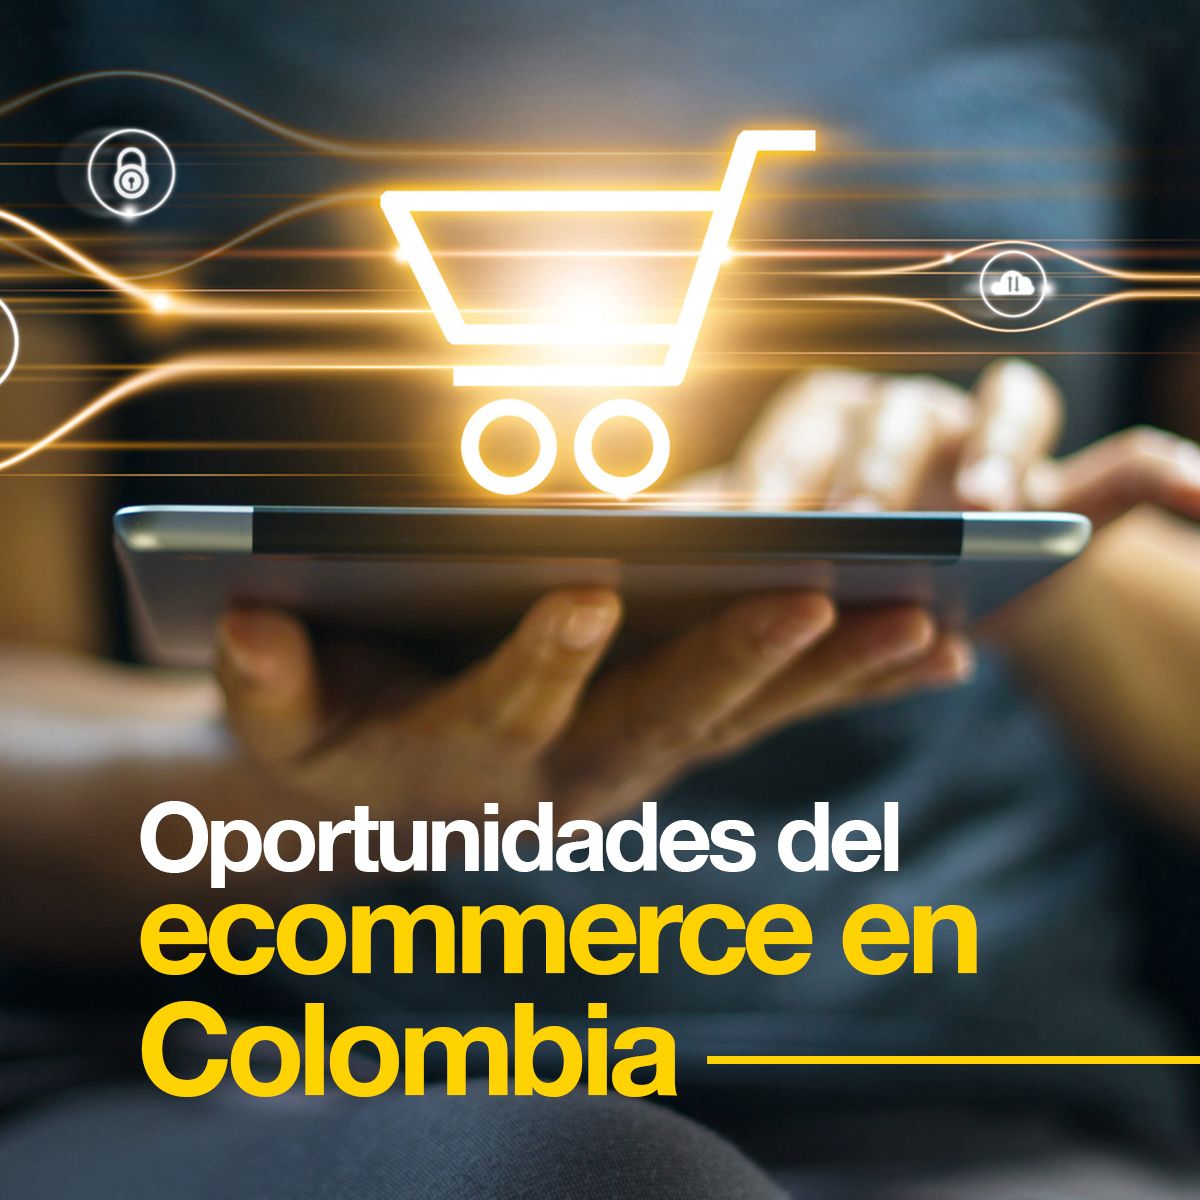 Oportunidades del ecommerce en Colombia